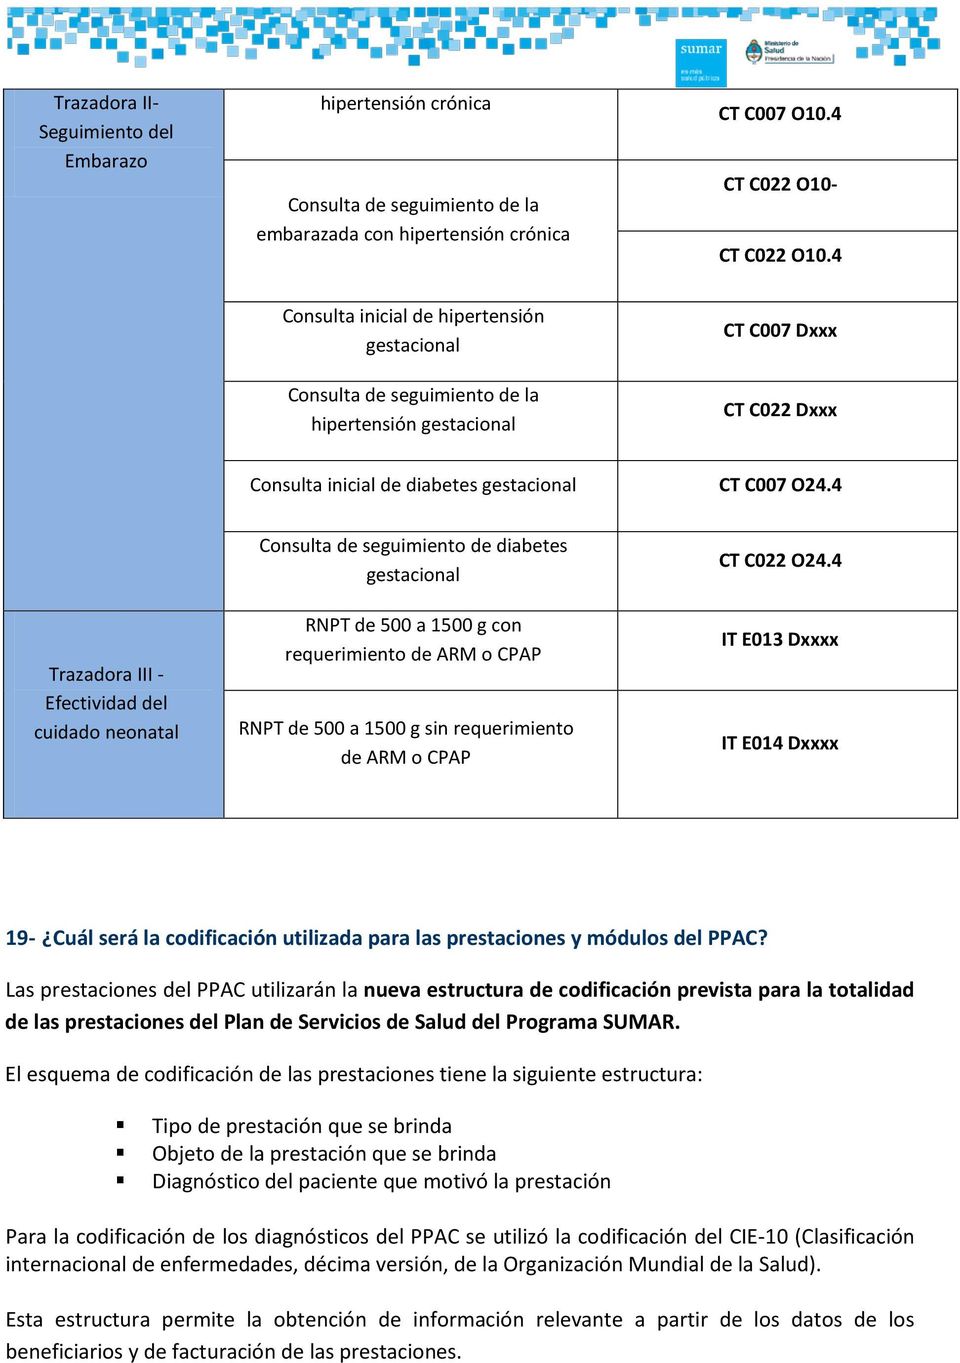 4 Trazadora III - Efectividad del cuidado neonatal Consulta de seguimiento de diabetes gestacional RNPT de 500 a 1500 g con requerimiento de ARM o CPAP RNPT de 500 a 1500 g sin requerimiento de ARM o